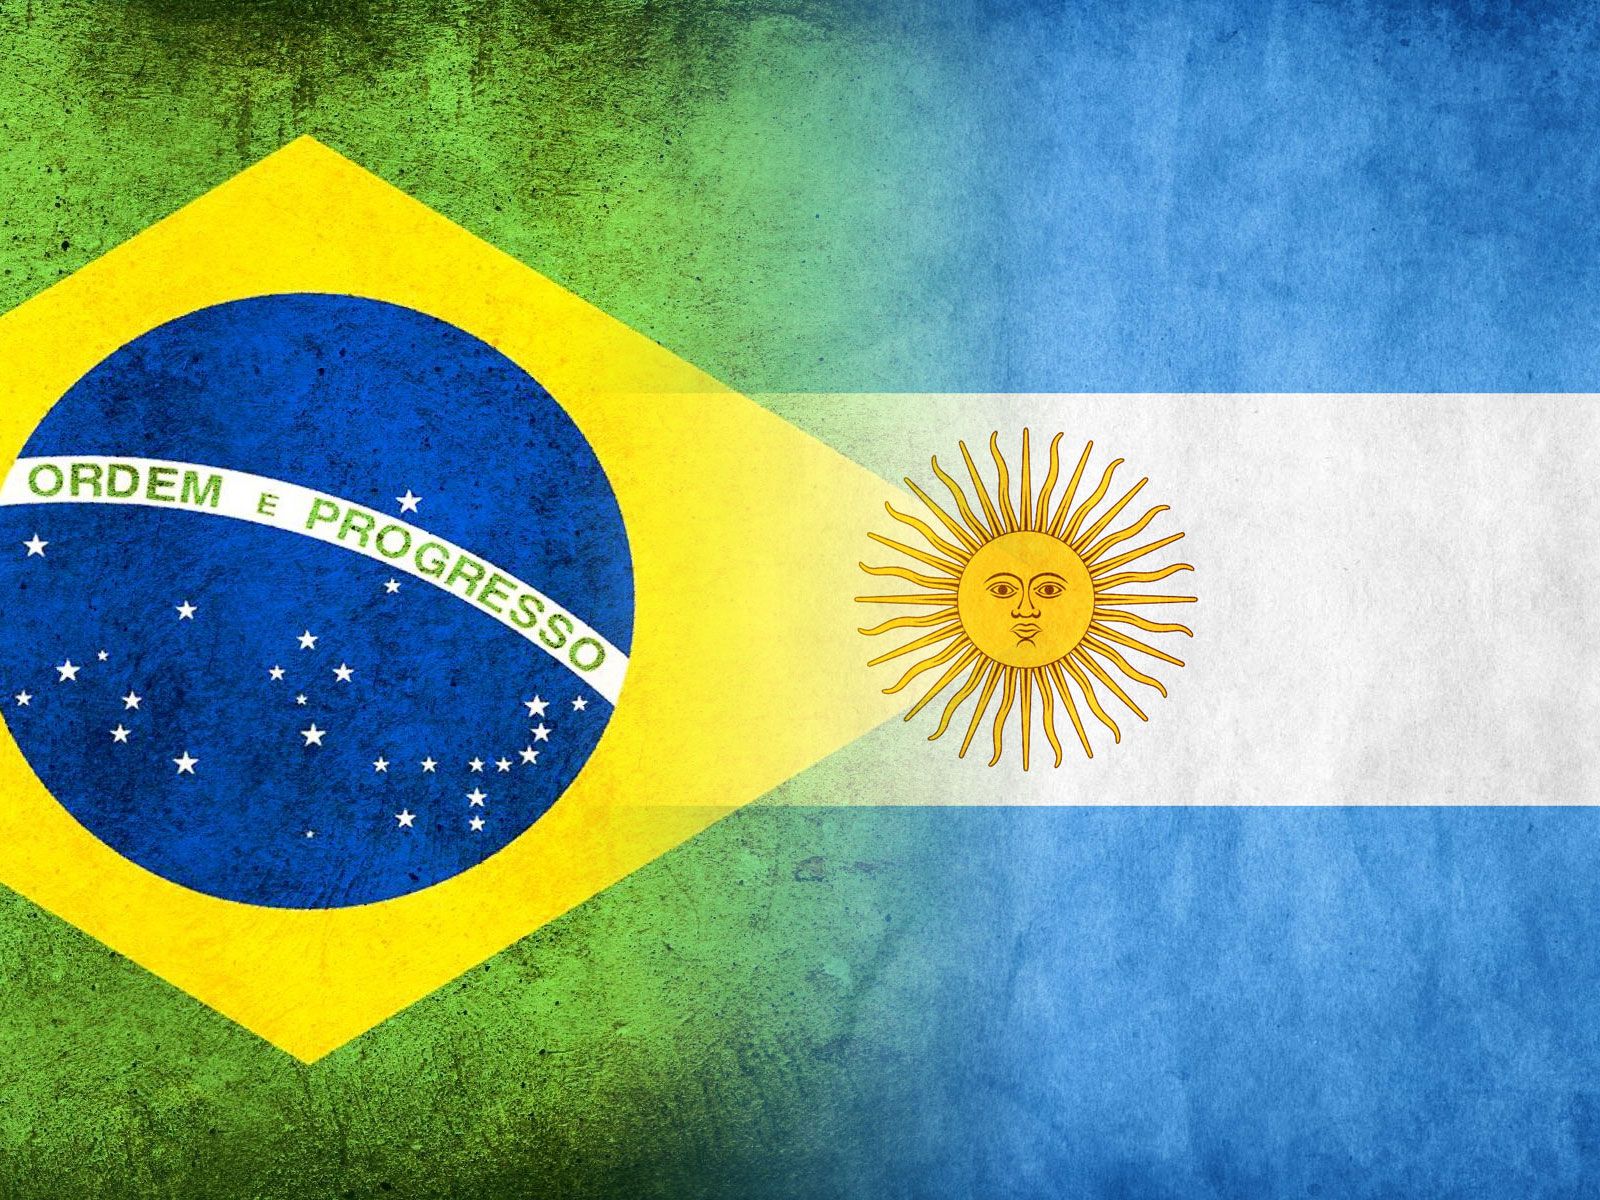 Tmf Group clasificó a Brasil como uno de los más complicados: Brasil y